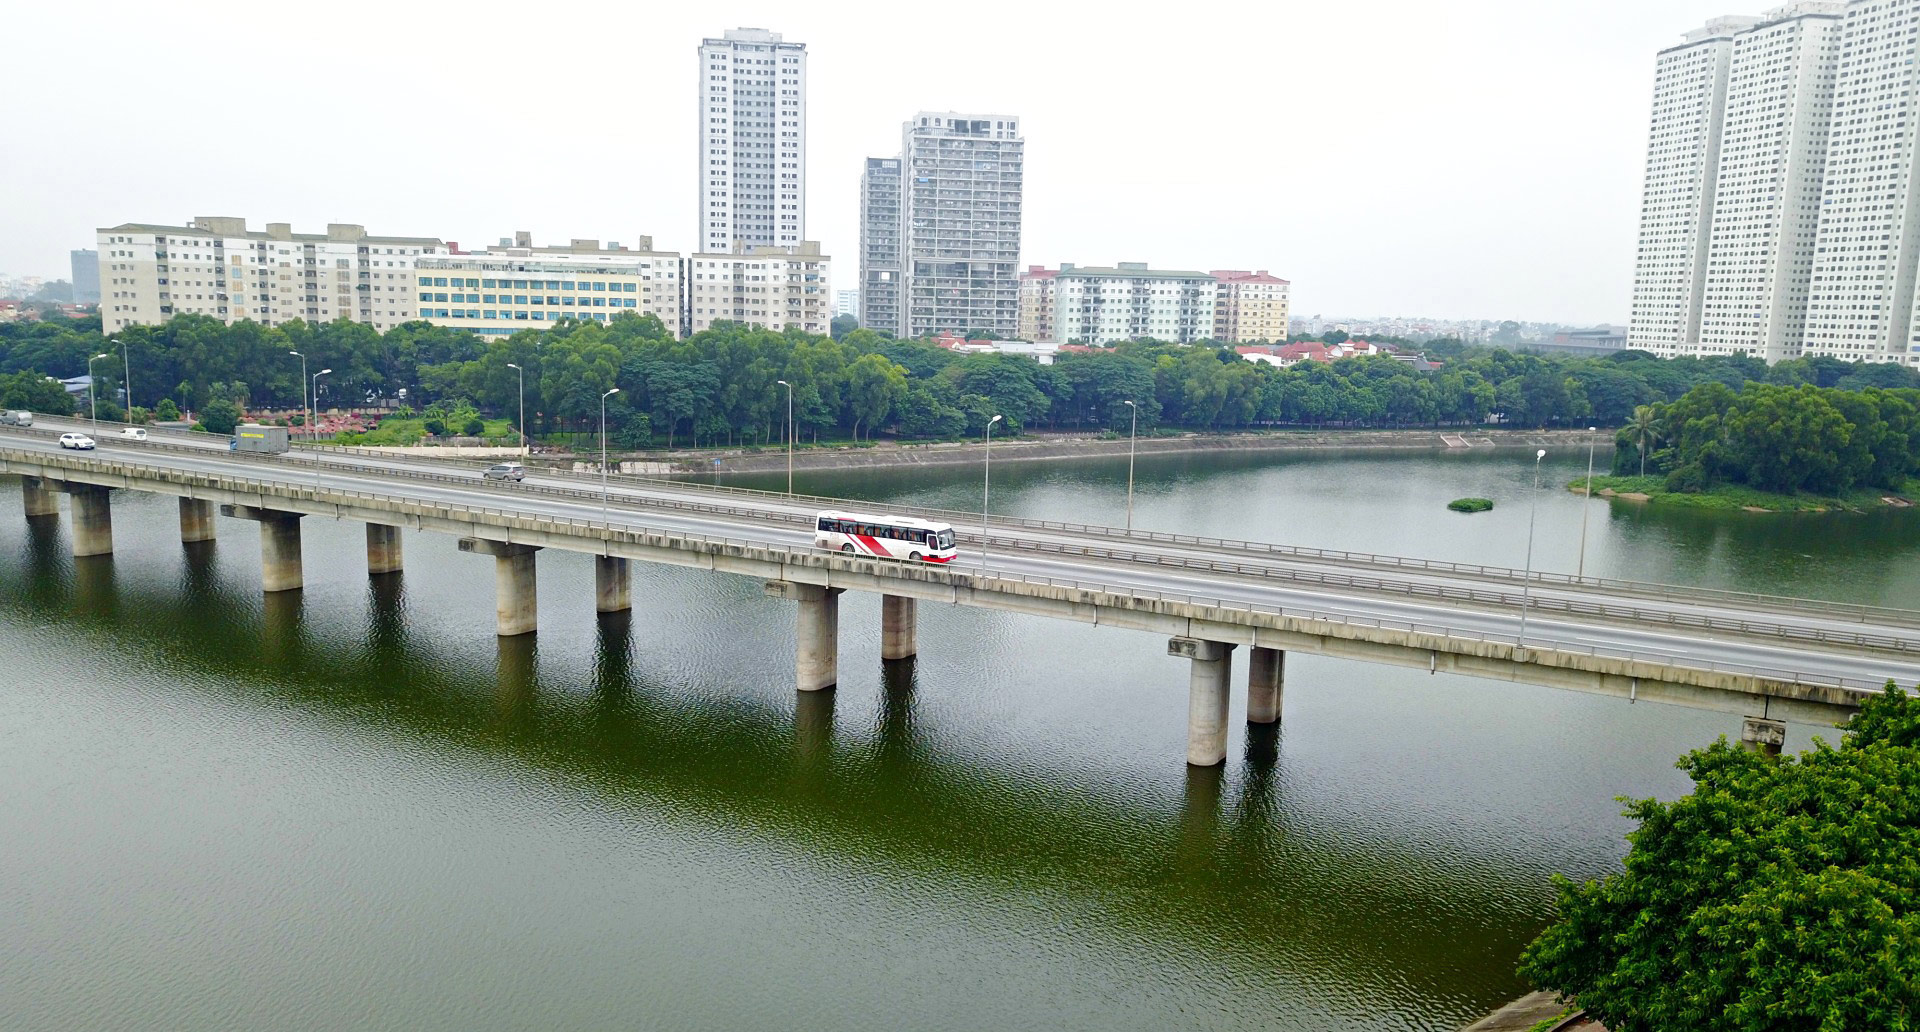 Tuyến vành đai chạy xuyên Thủ đô và cây cầu lịch sử cho tình hữu nghị - 4